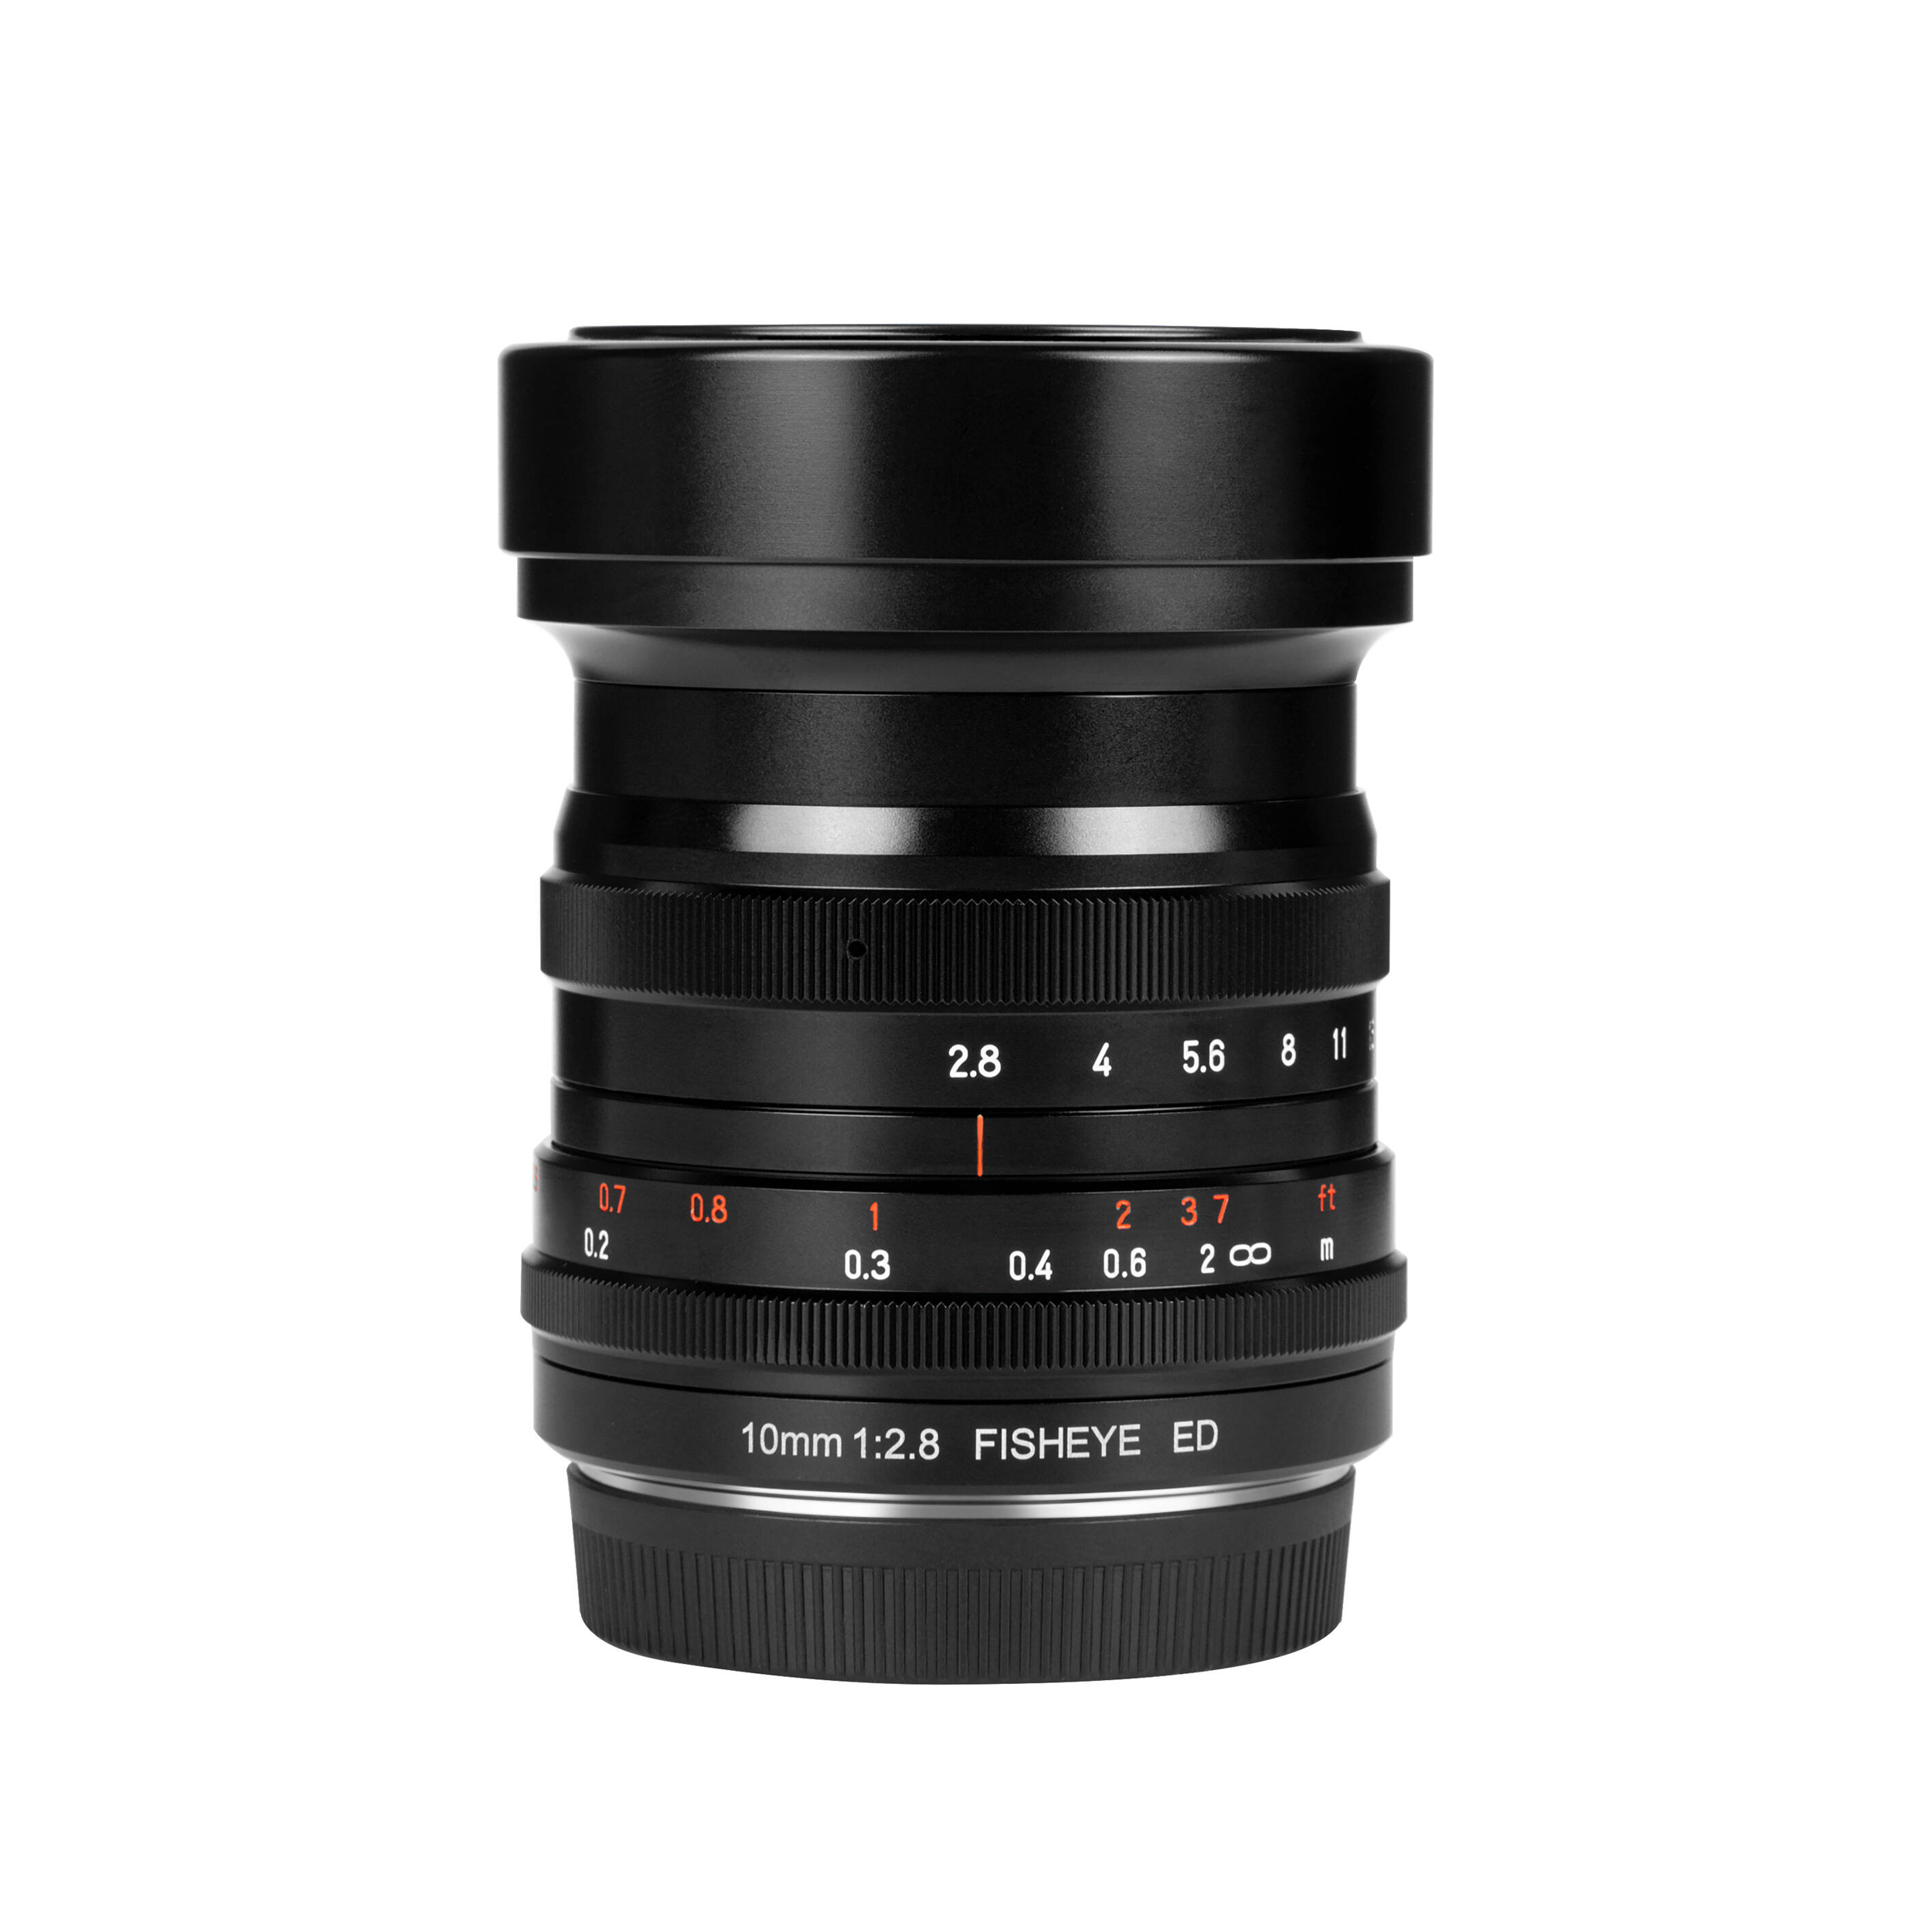 7artisans Photoelectric 10mm f/2.8 Fisheye Lens for Sony E Mount